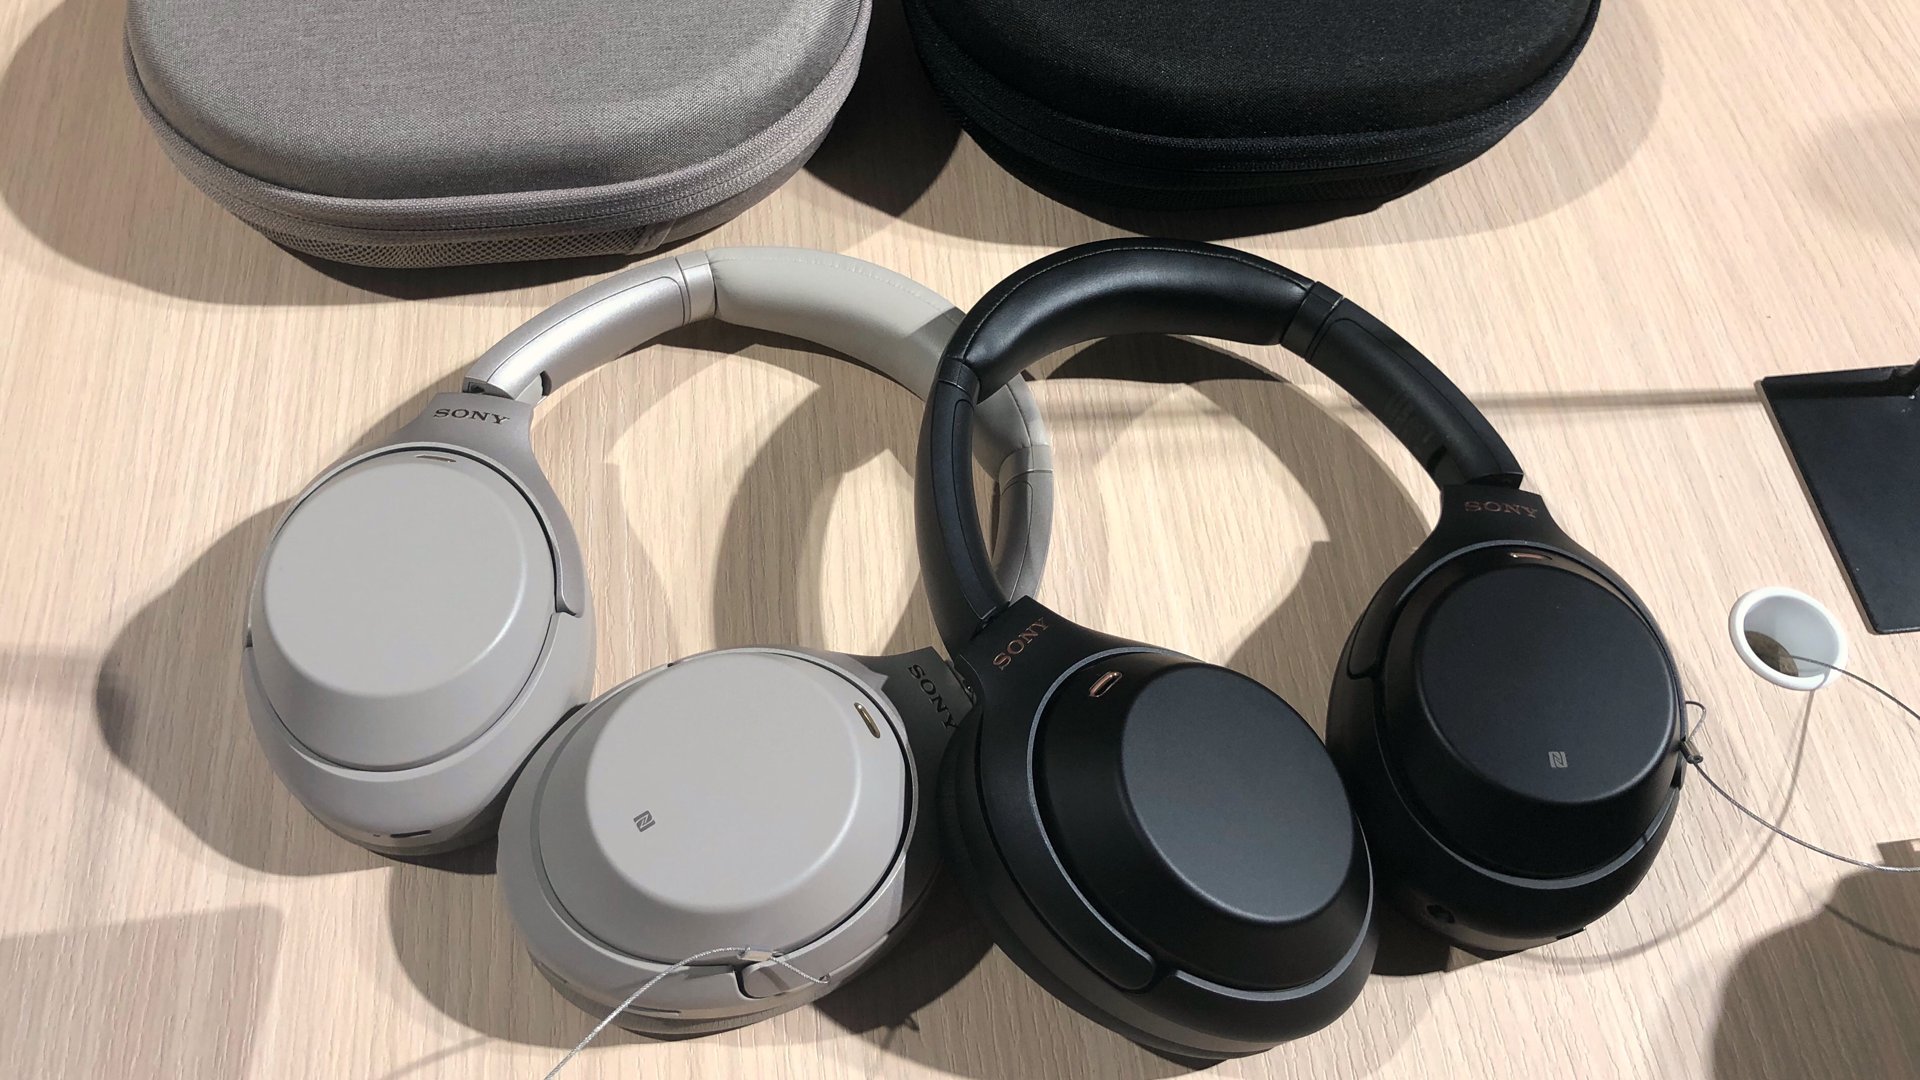 Sony WH-1000XM3 trådlösa hörlurar